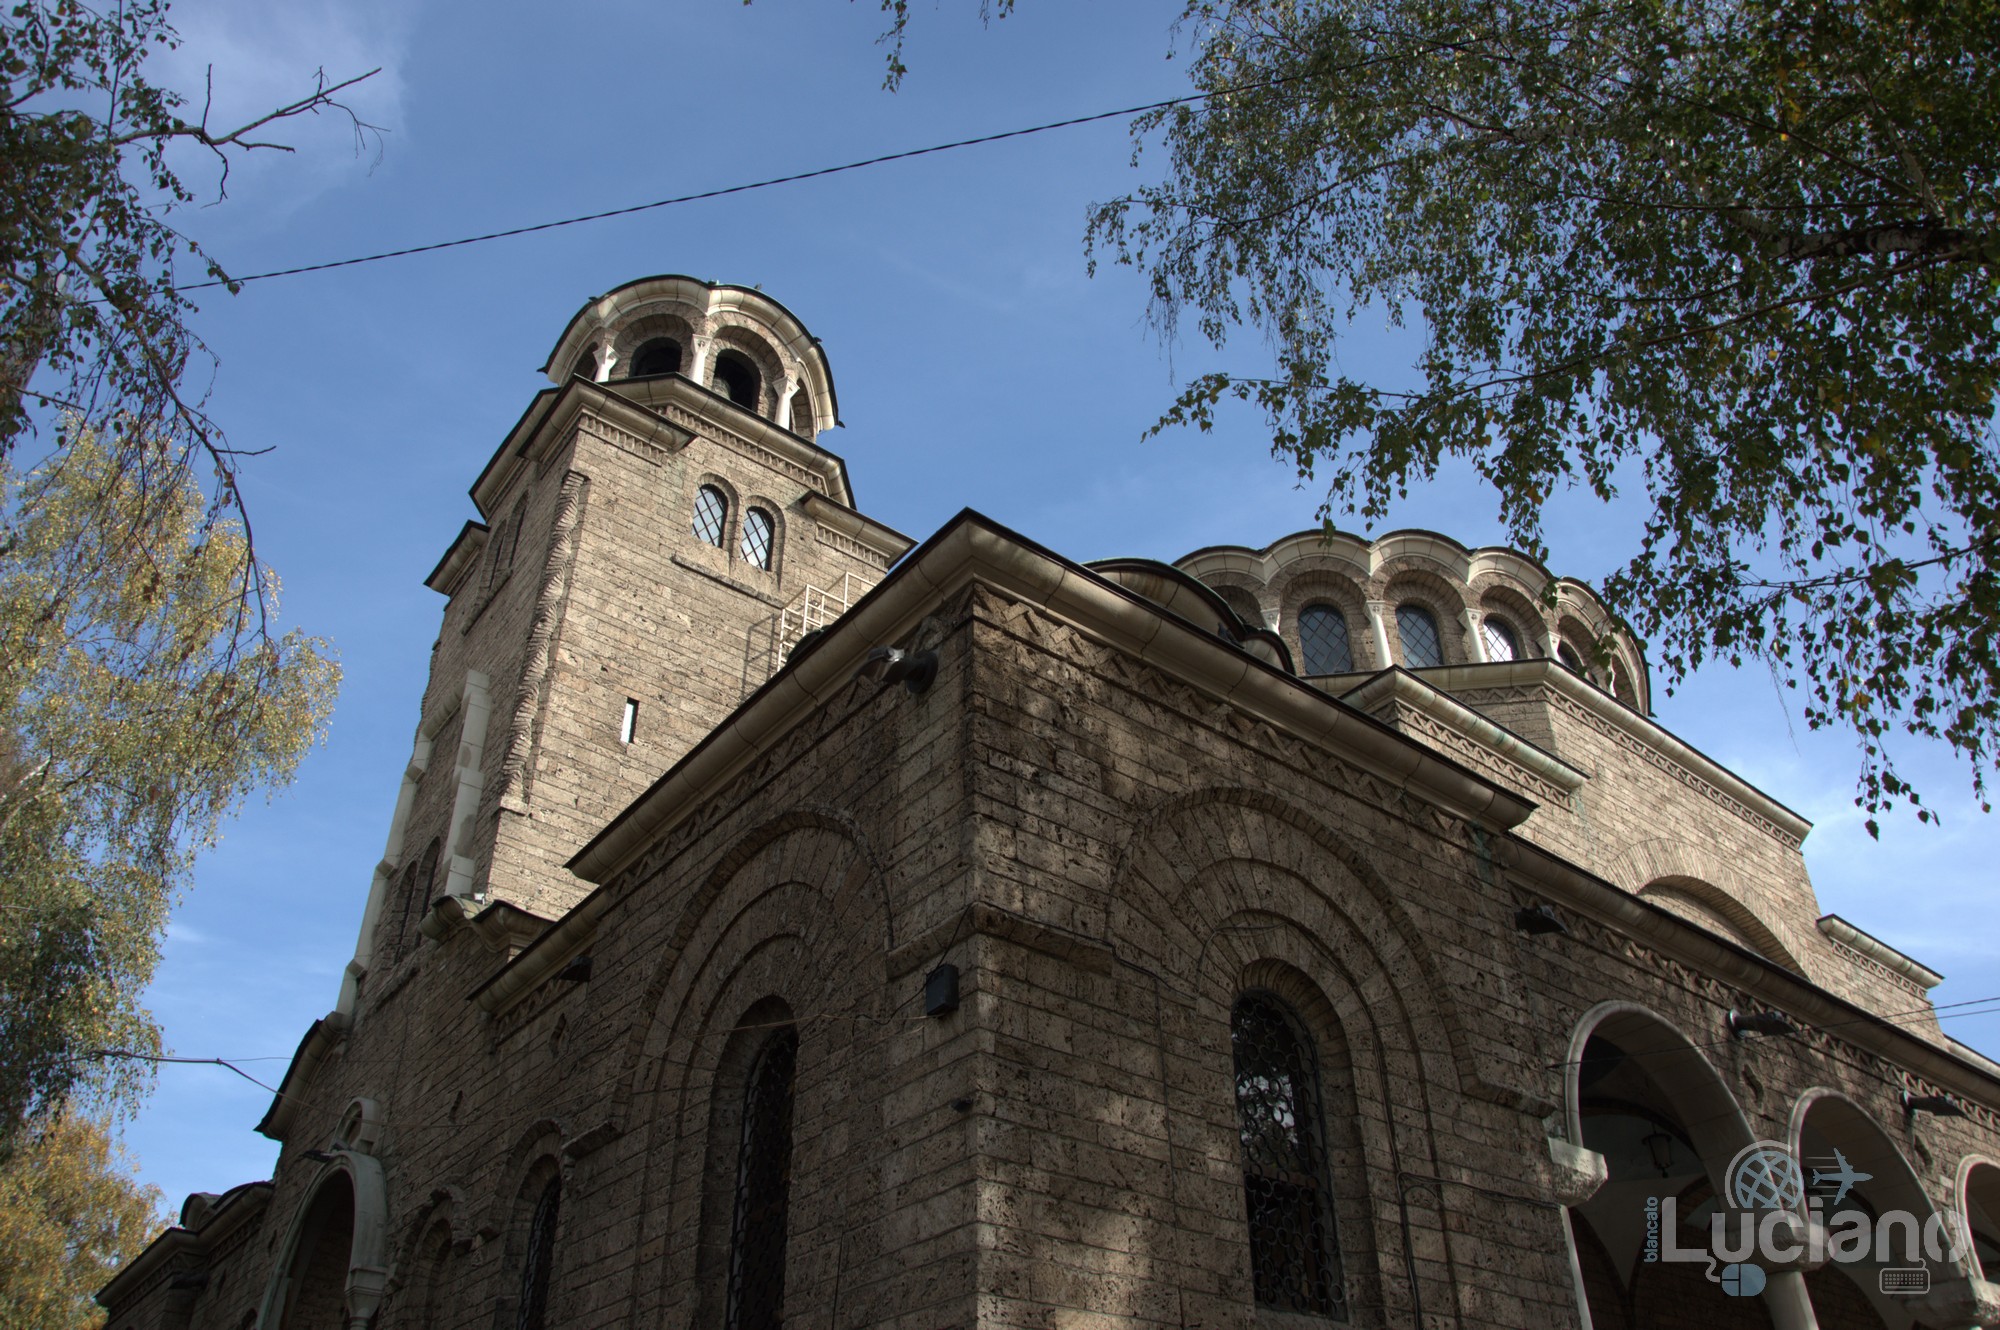 La cattedrale di Santa Domenica (църква Света Неделя) è la cattedrale ortodossa della città di Sofia, in Bulgaria.